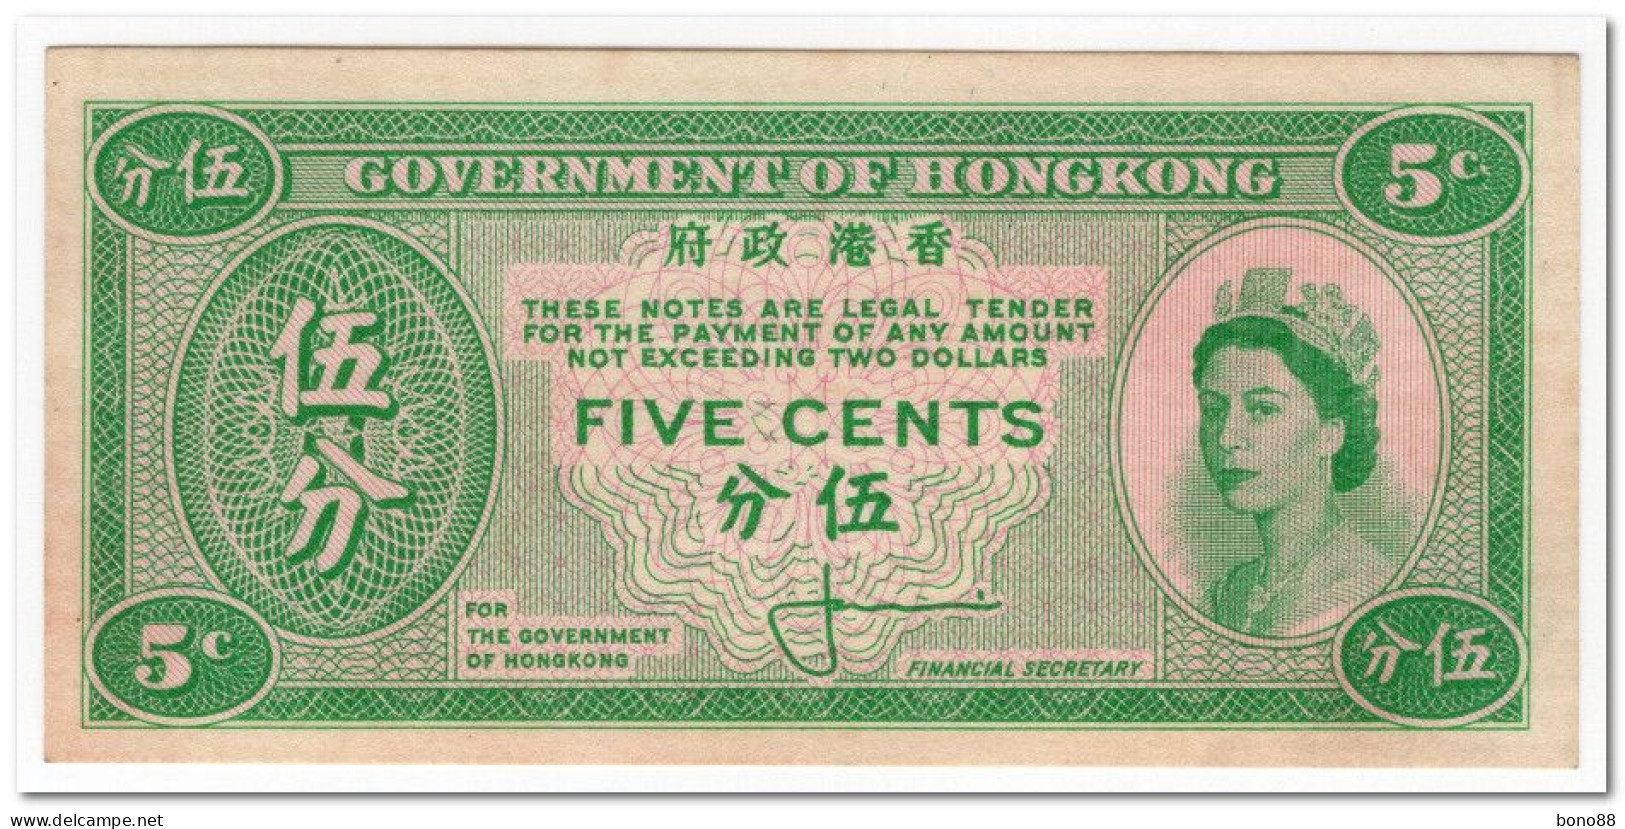 HONG KONG,5 CENTS,1961-65,P.326,XF,HAS BEEN GLUED - Hong Kong